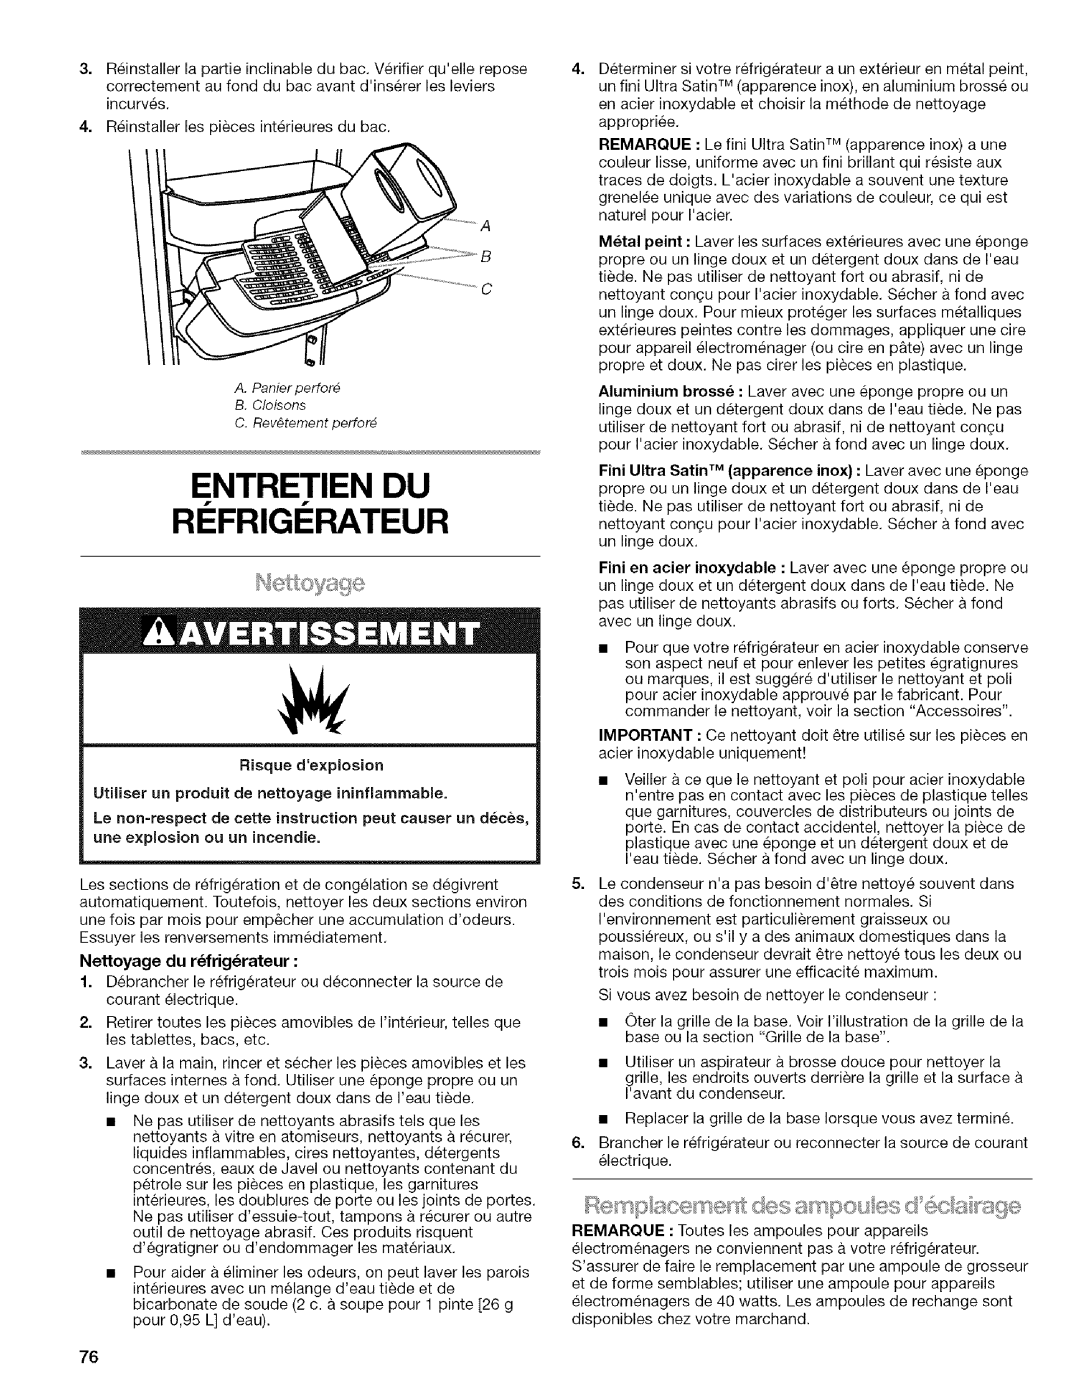 Kenmore 2318589 manual Entretien Du Ri Frigi Rateur, Nettoyage du r_frig_rateur 